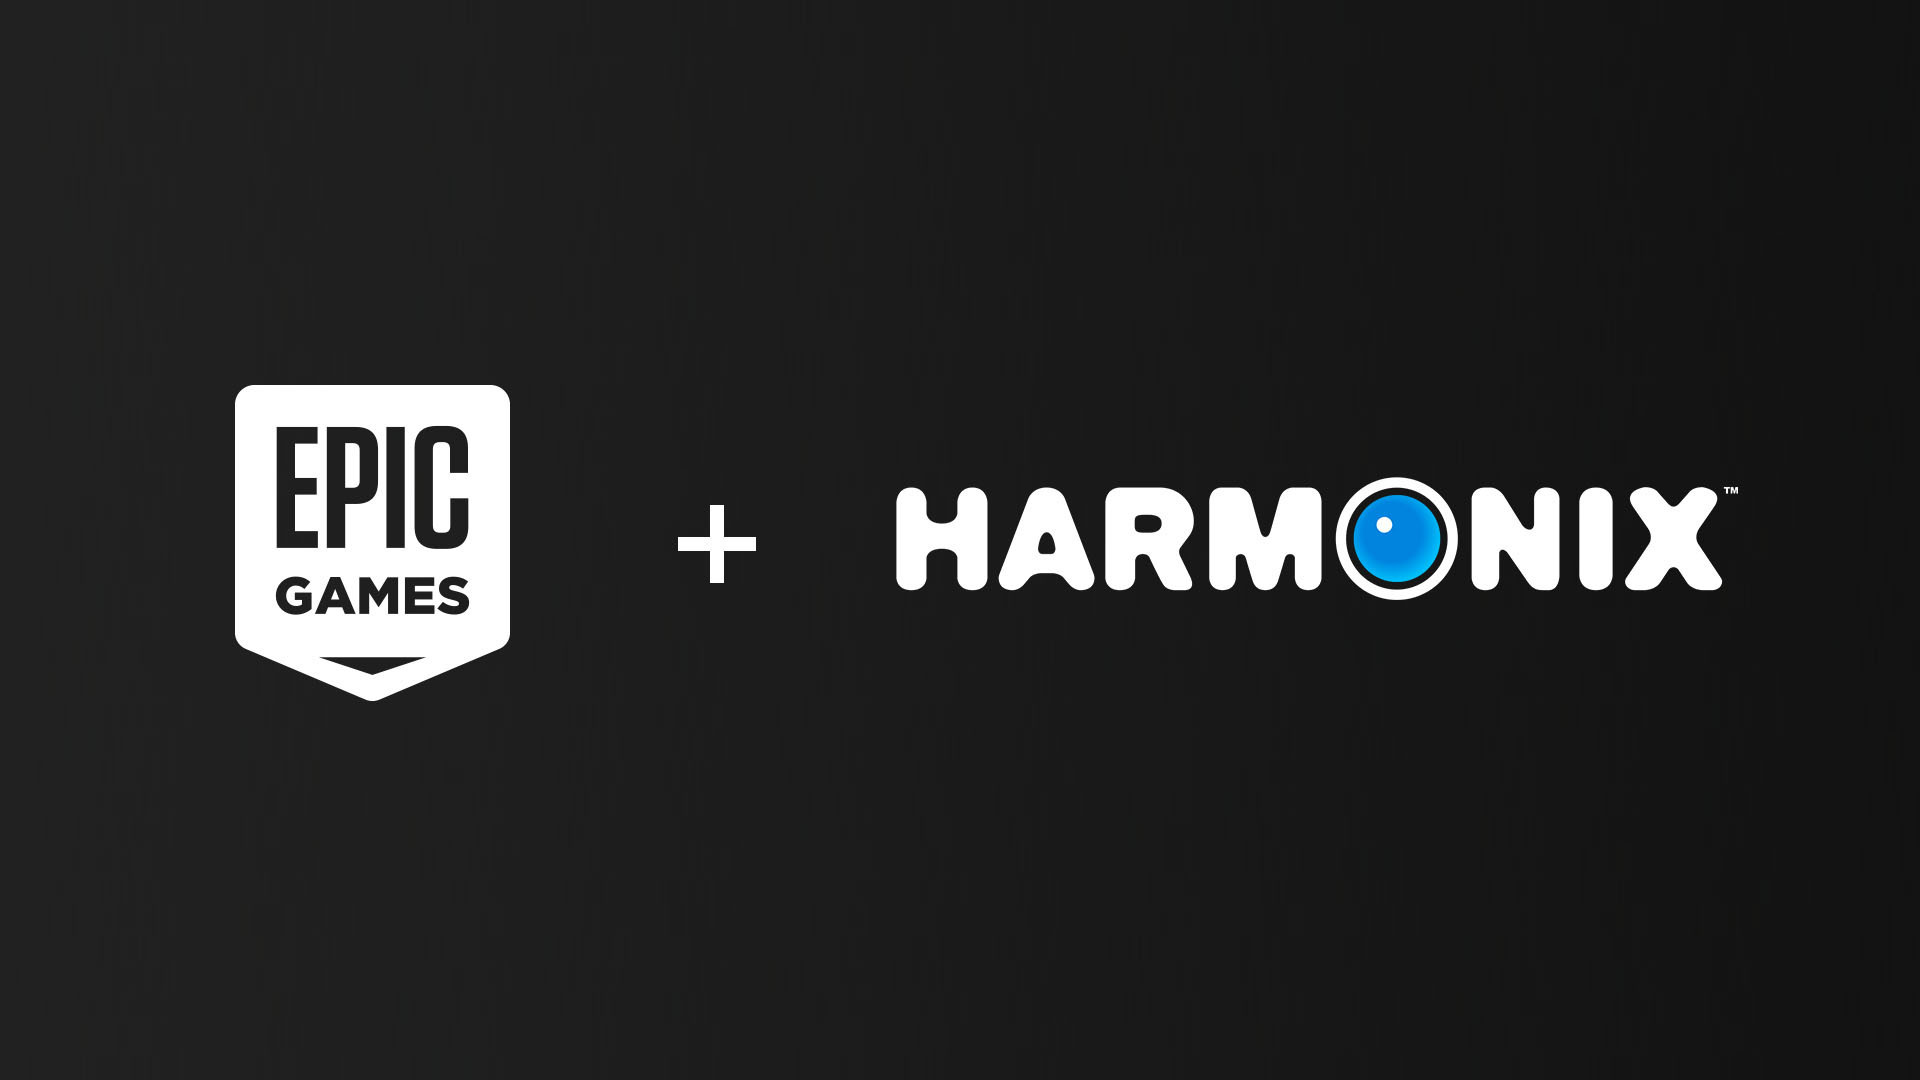 Epic Games + Harmonix